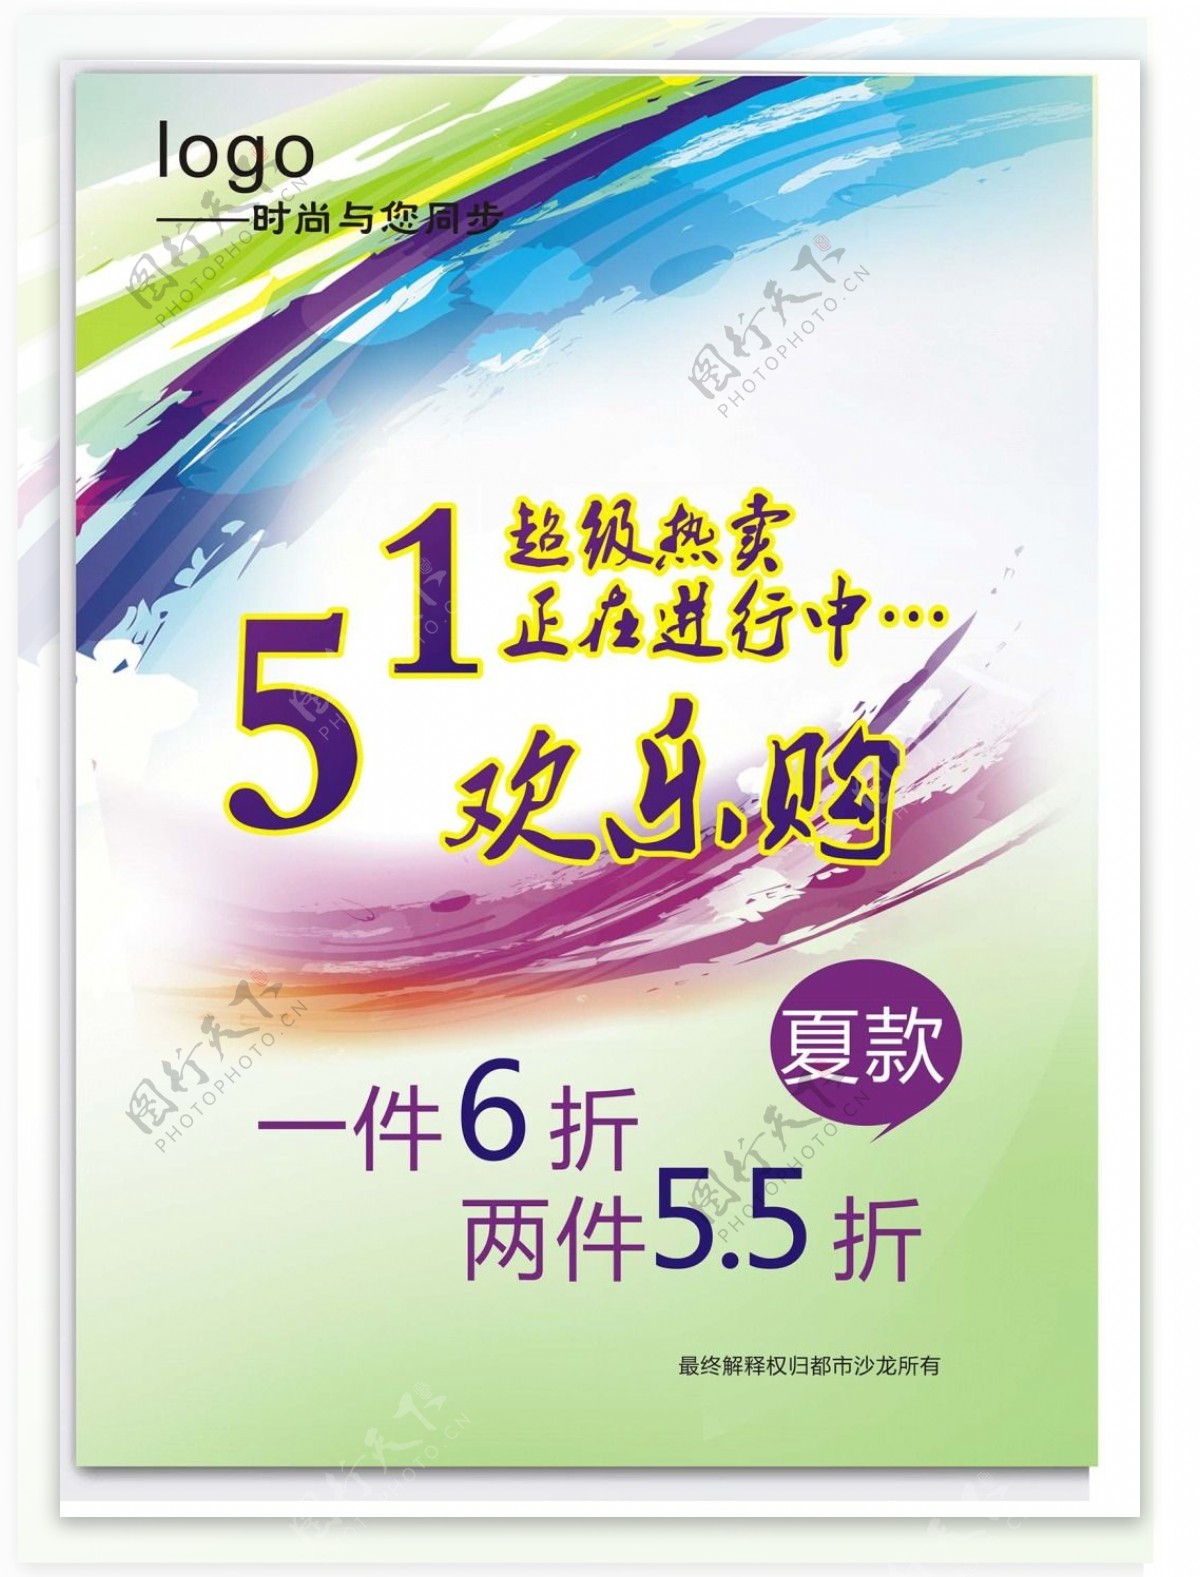 51欢乐购淘宝51促销海报